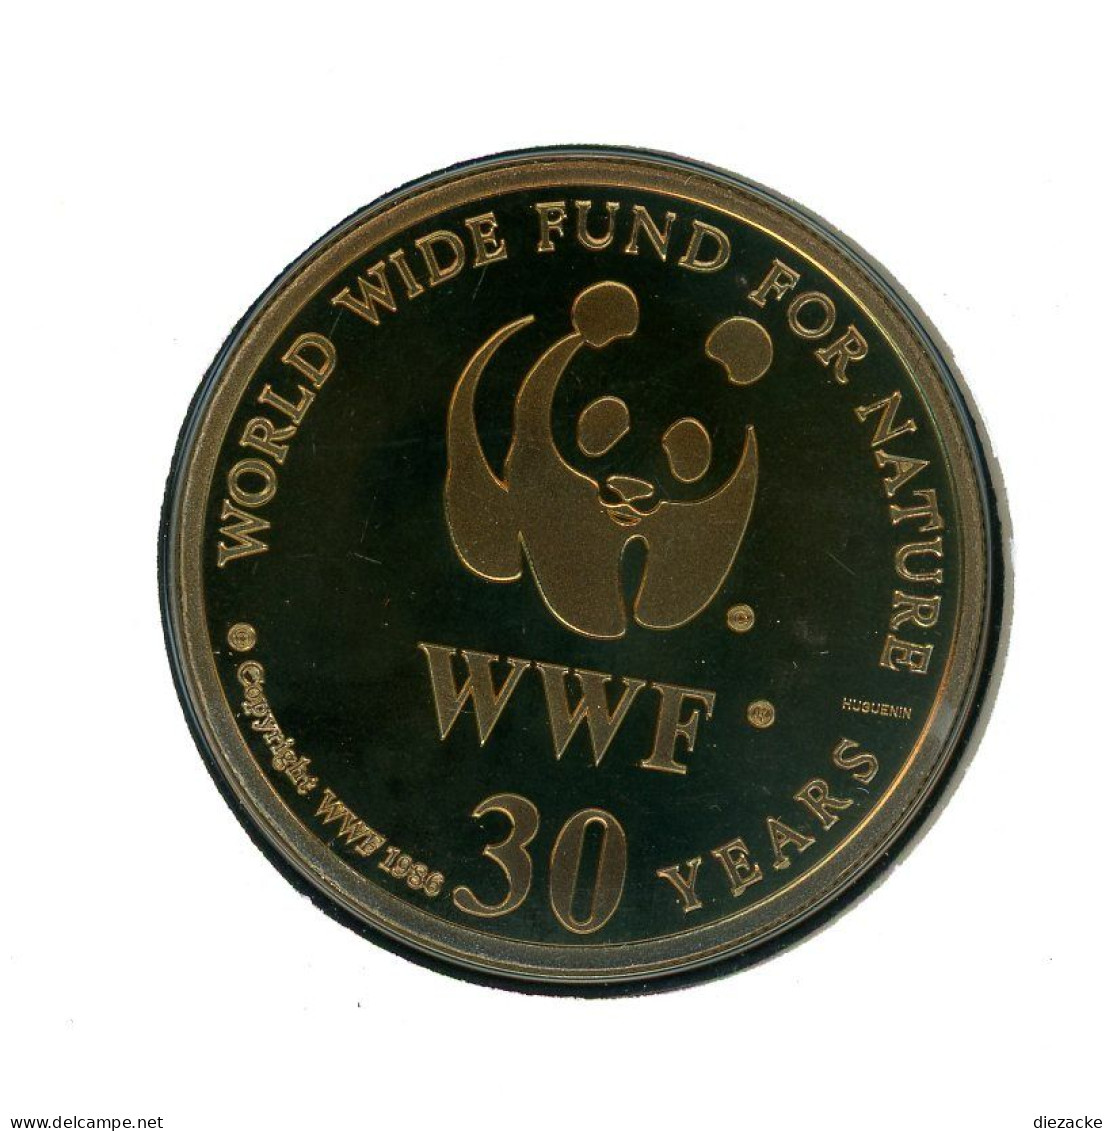 Senegal 1986 Numisbrief Medaille Dama Gazelle, 30 Jahre WWF Unzirkuliert (MD847 - Ohne Zuordnung